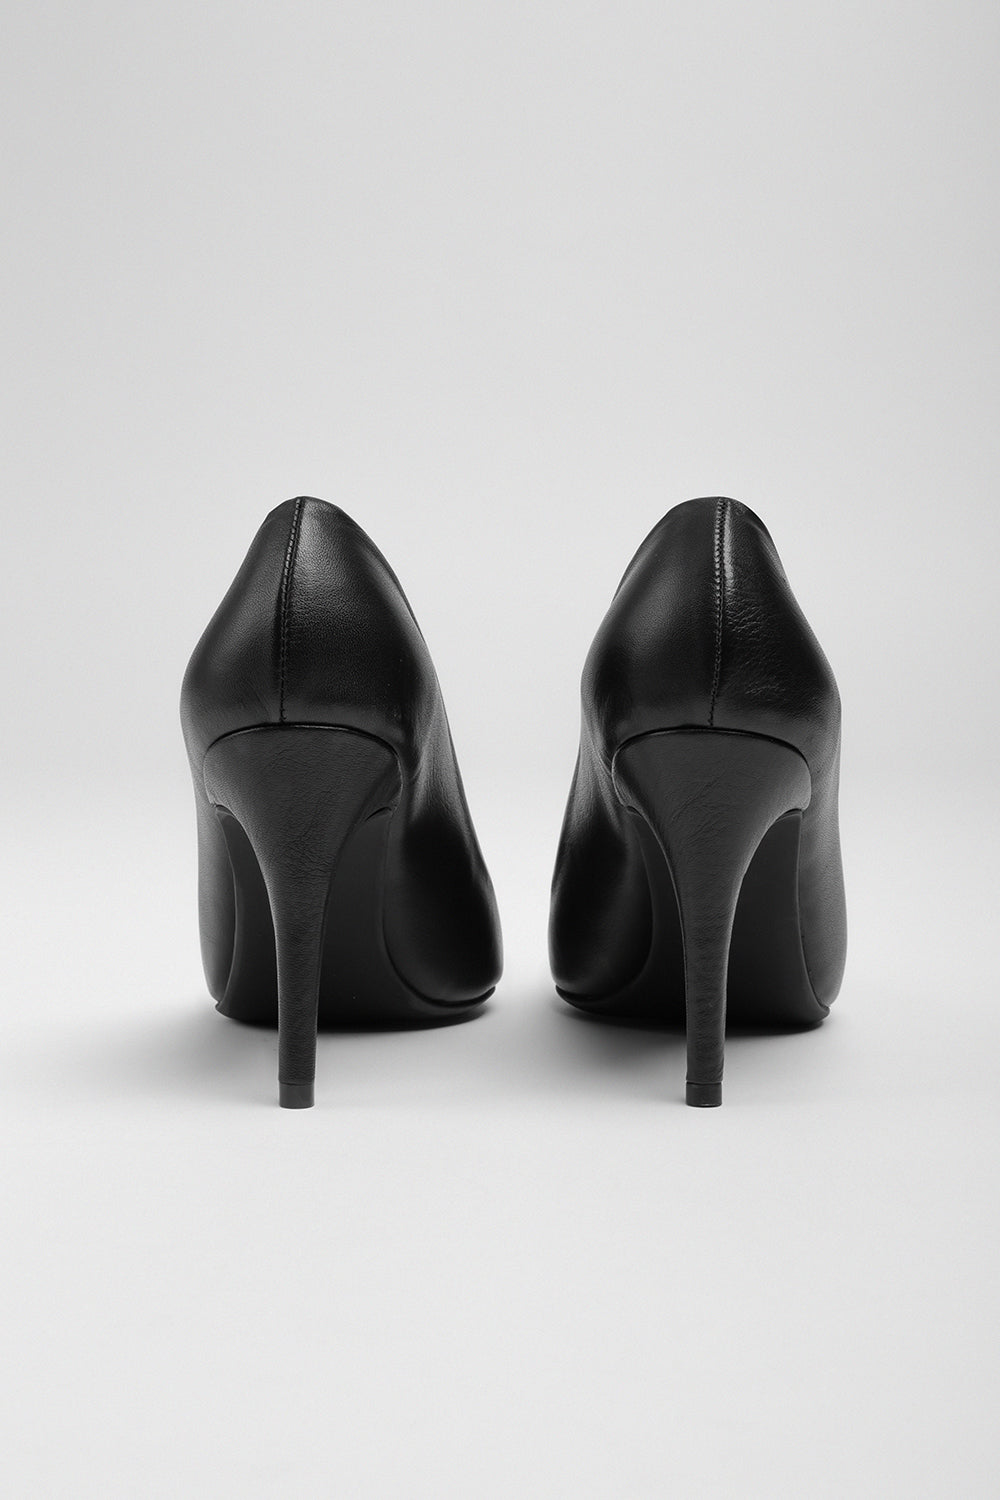 Kadın Siyah Deri Topuklu Ayakkabı 20148